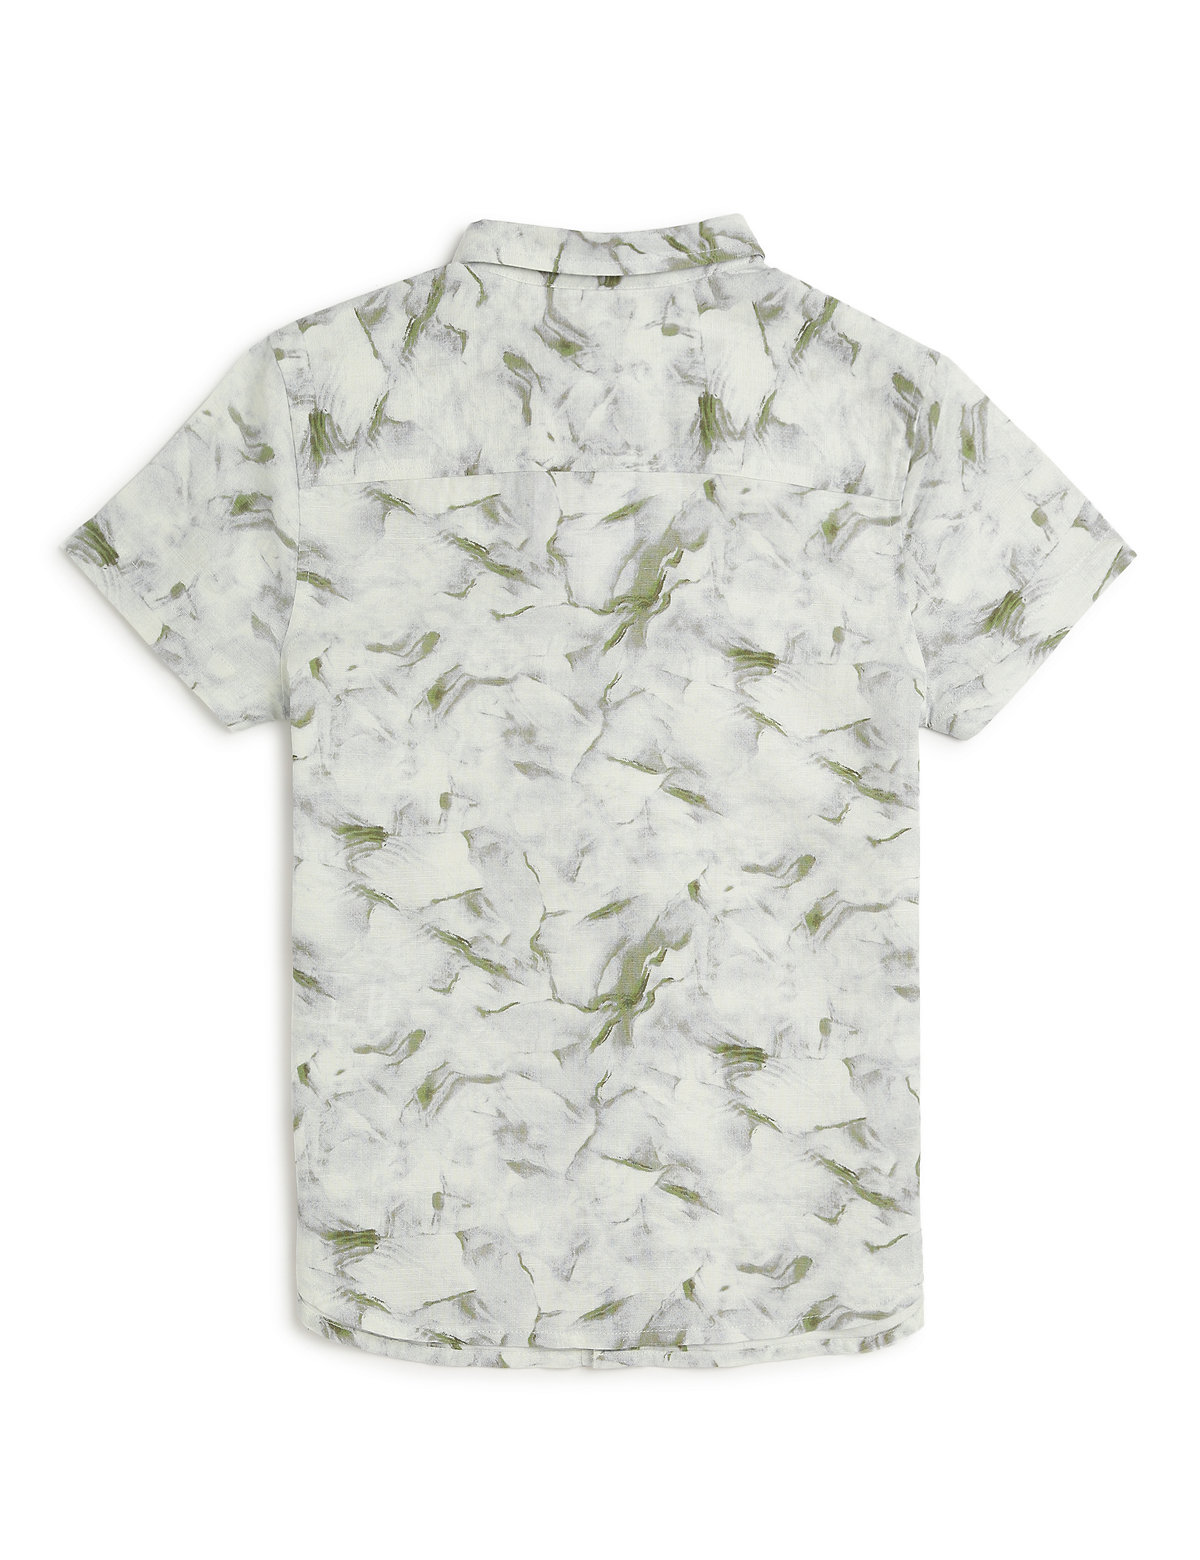 Linen Rich Marble Print Shirt